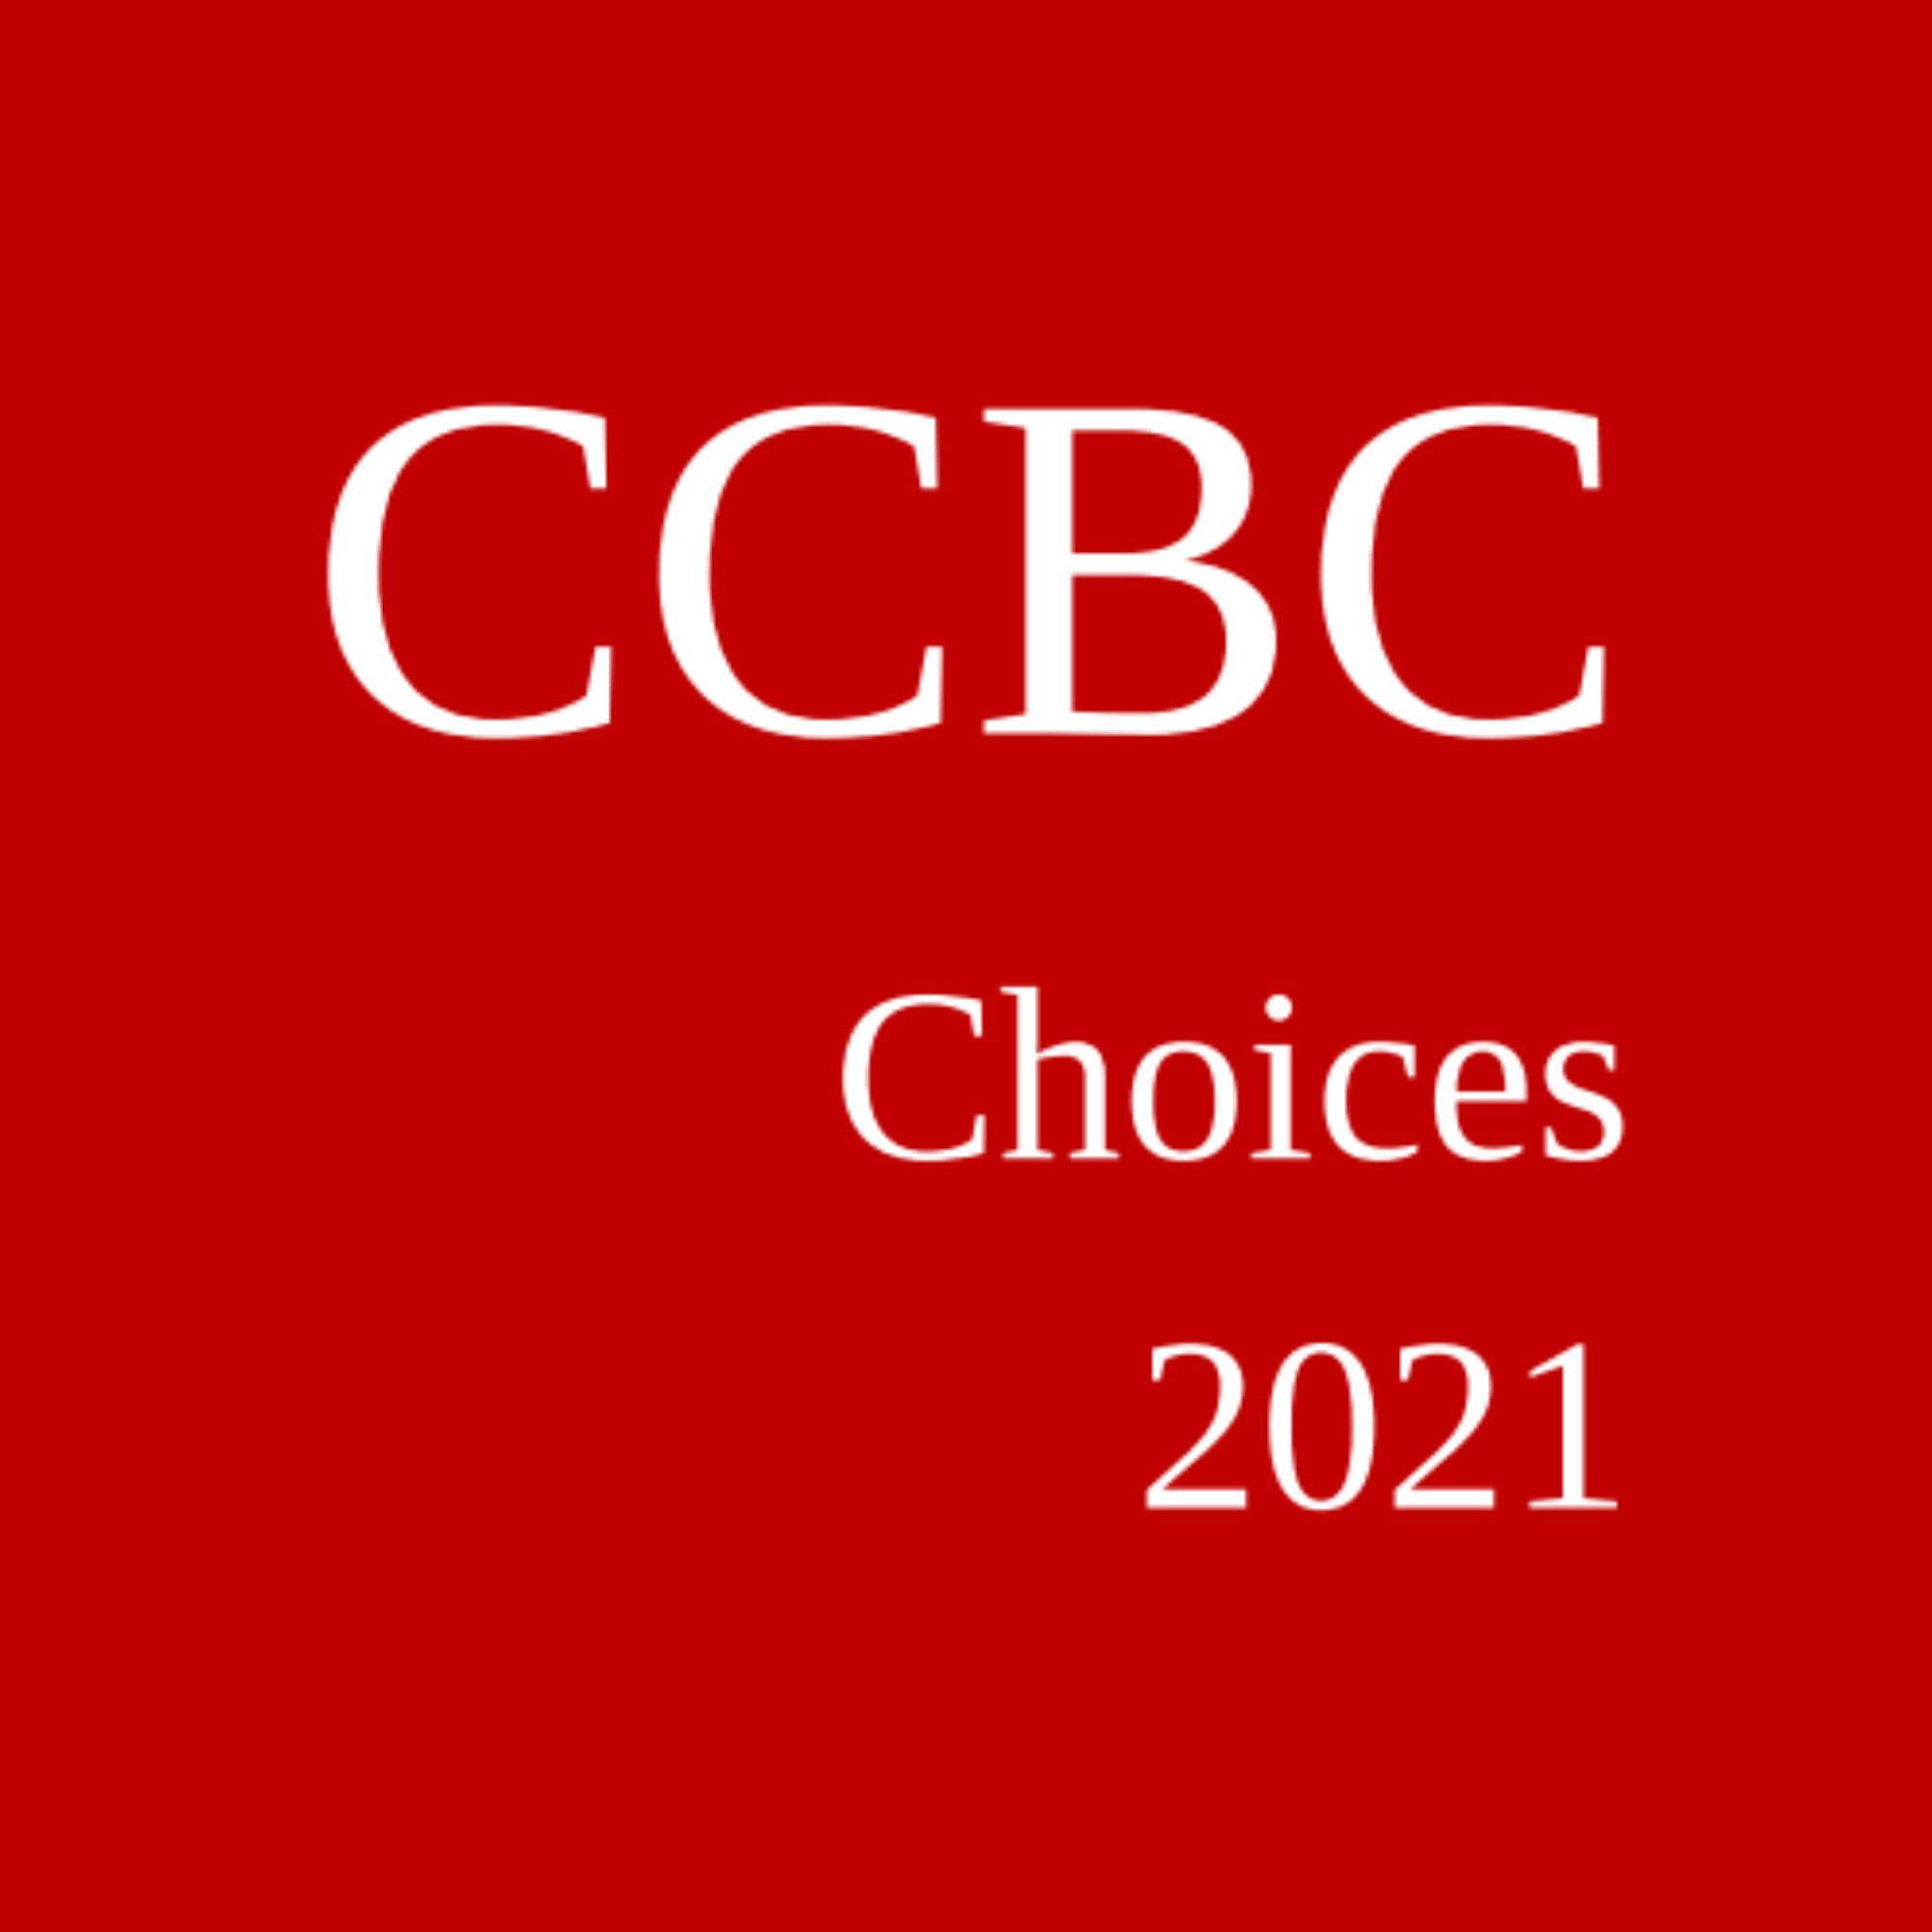 CCBC Choices 2021